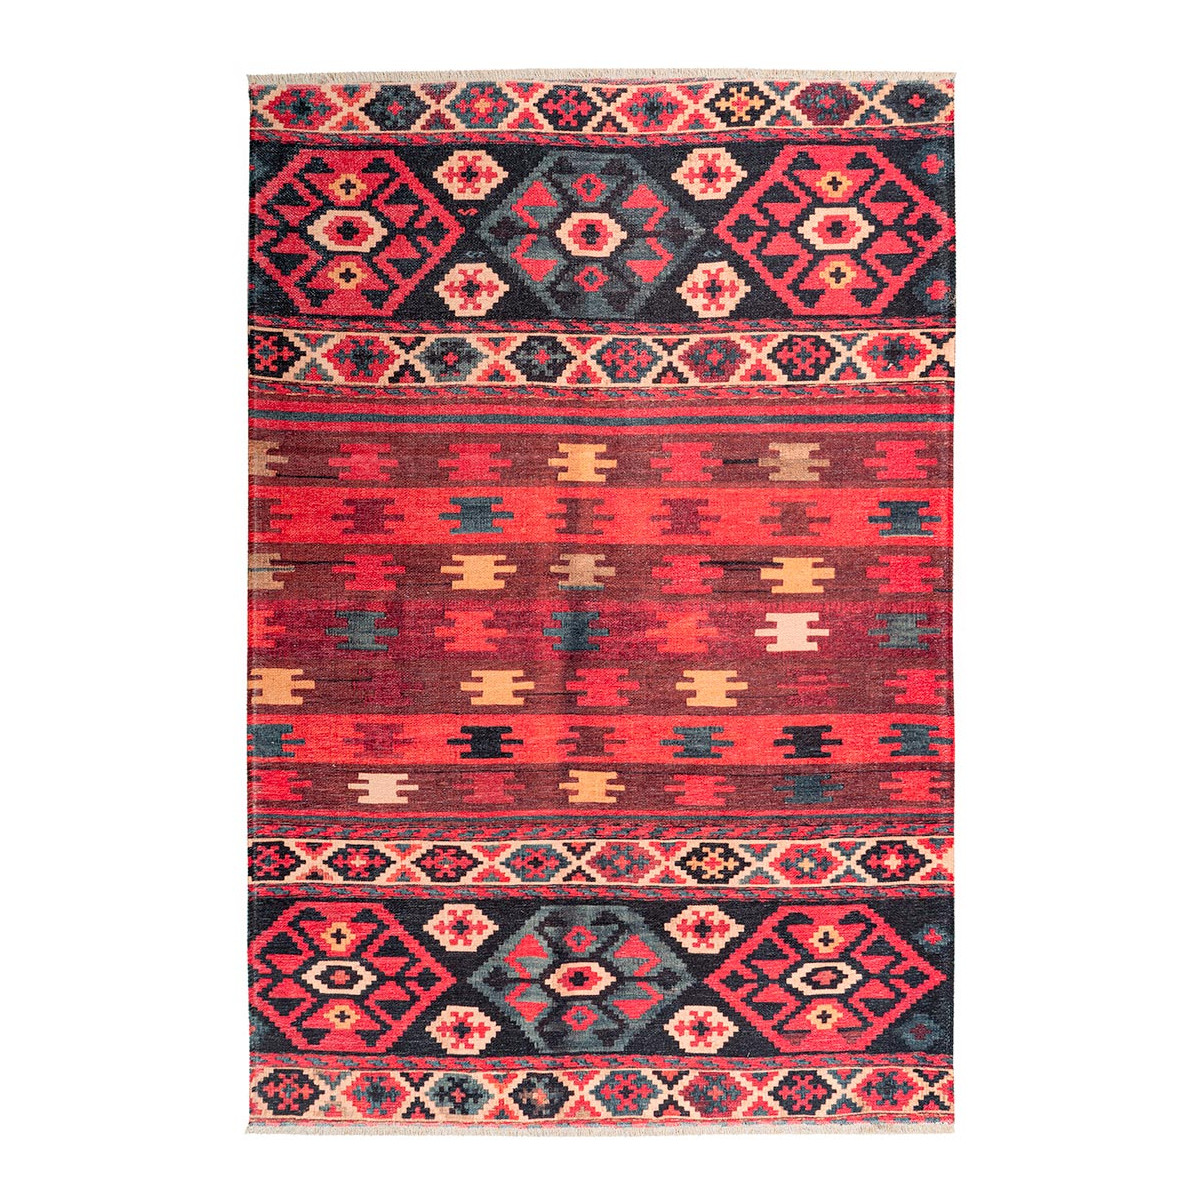 Tapis ethnique patchwork en polyester multicolore 115x170